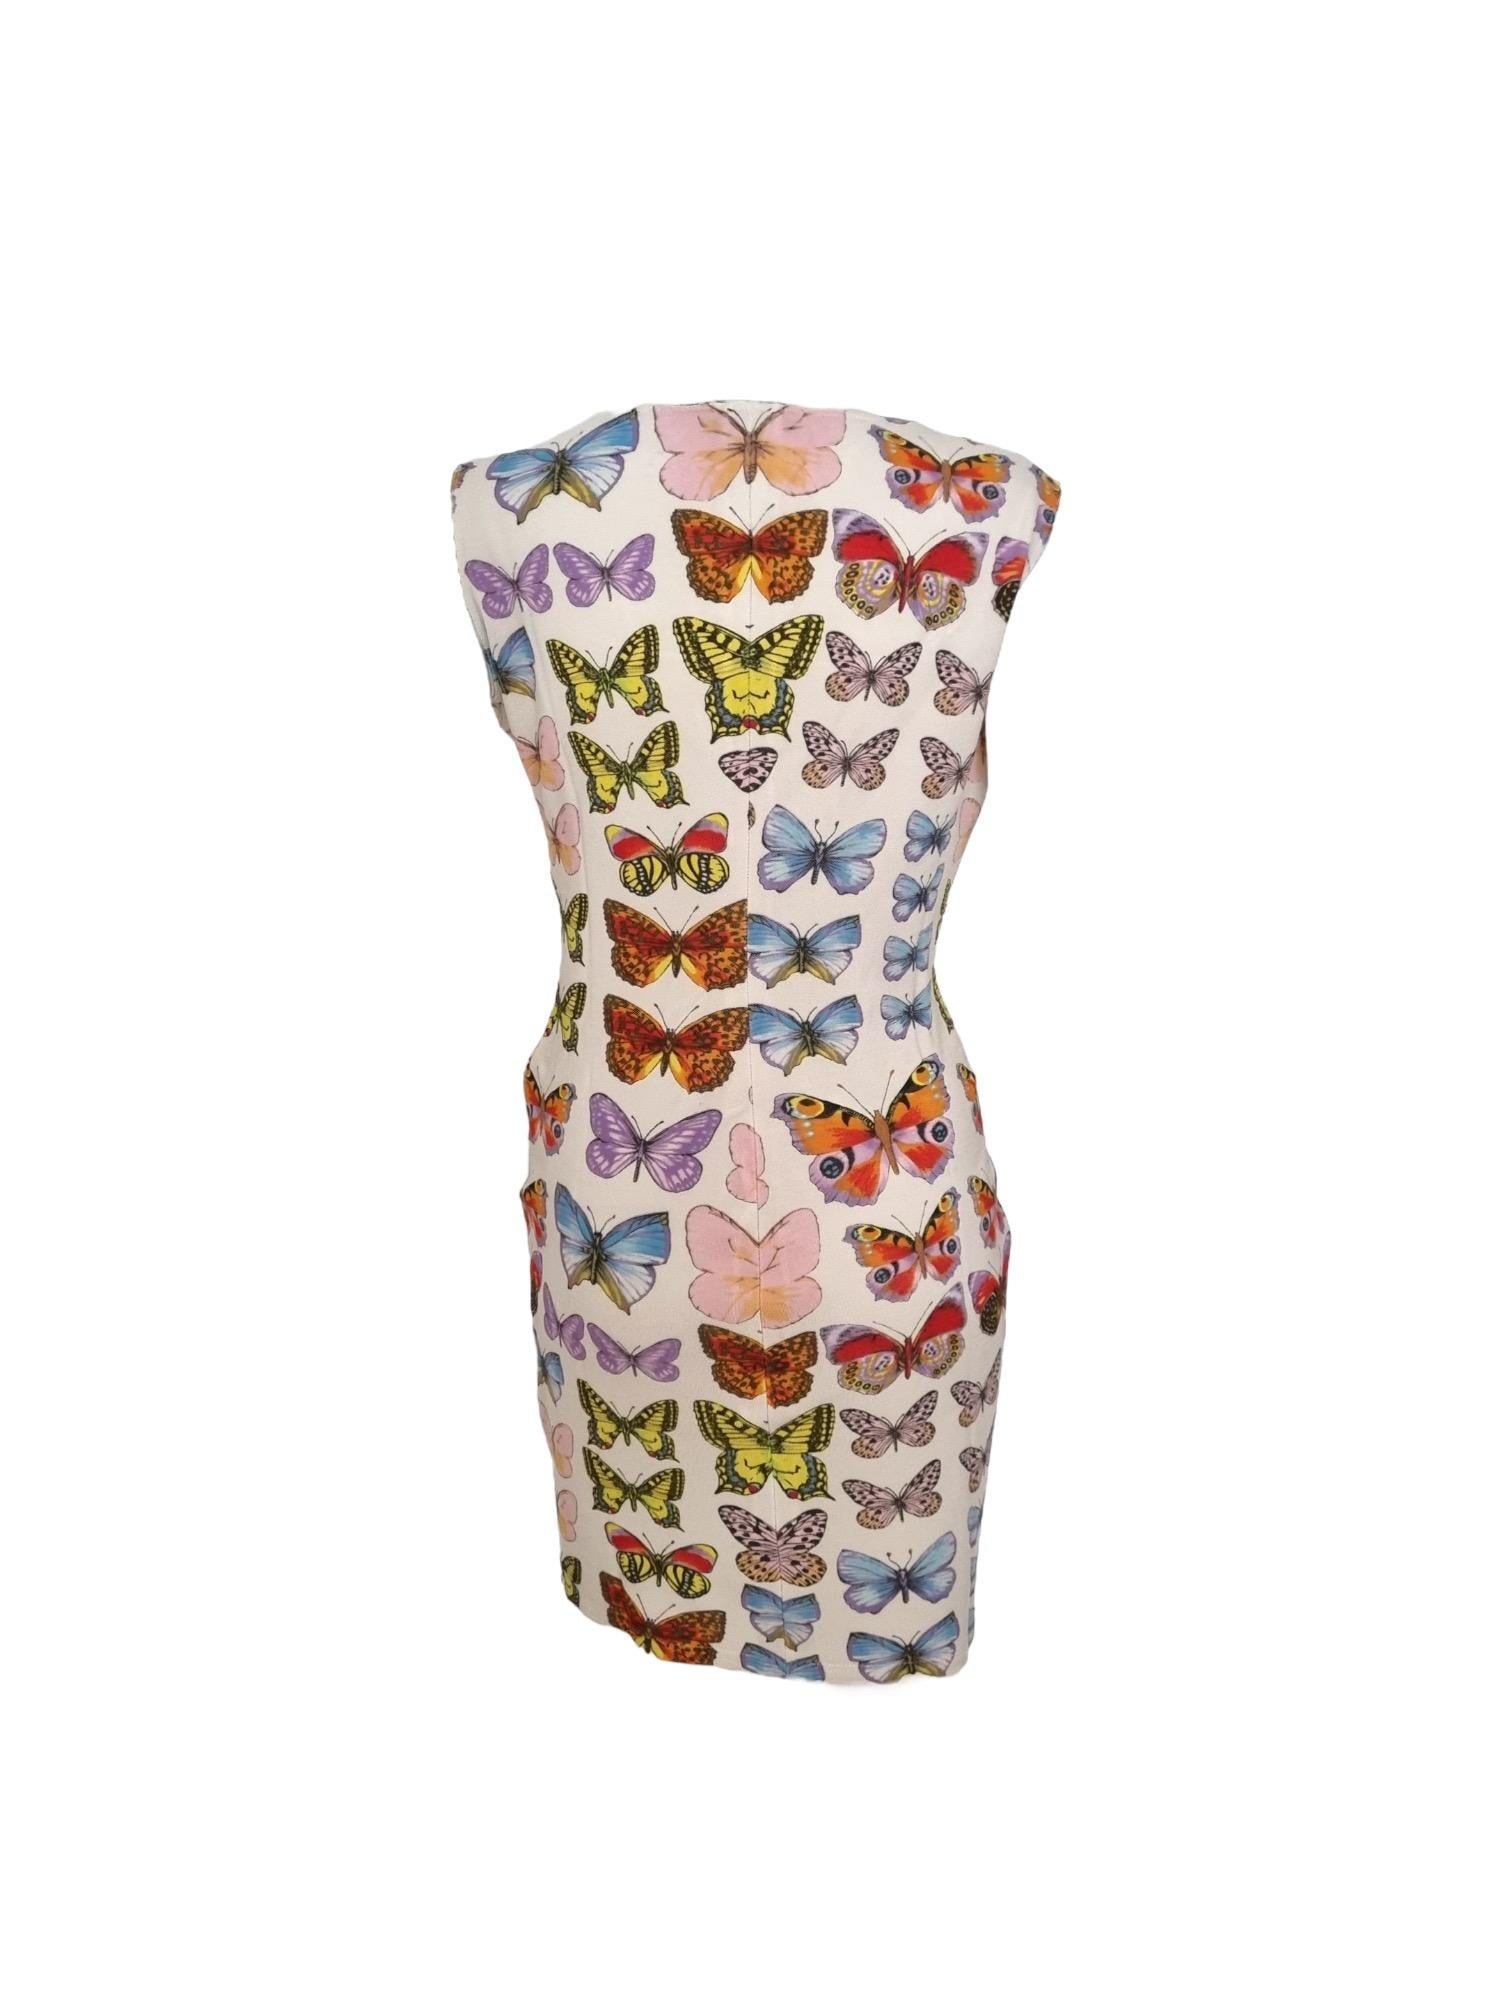 versace butterfly dress